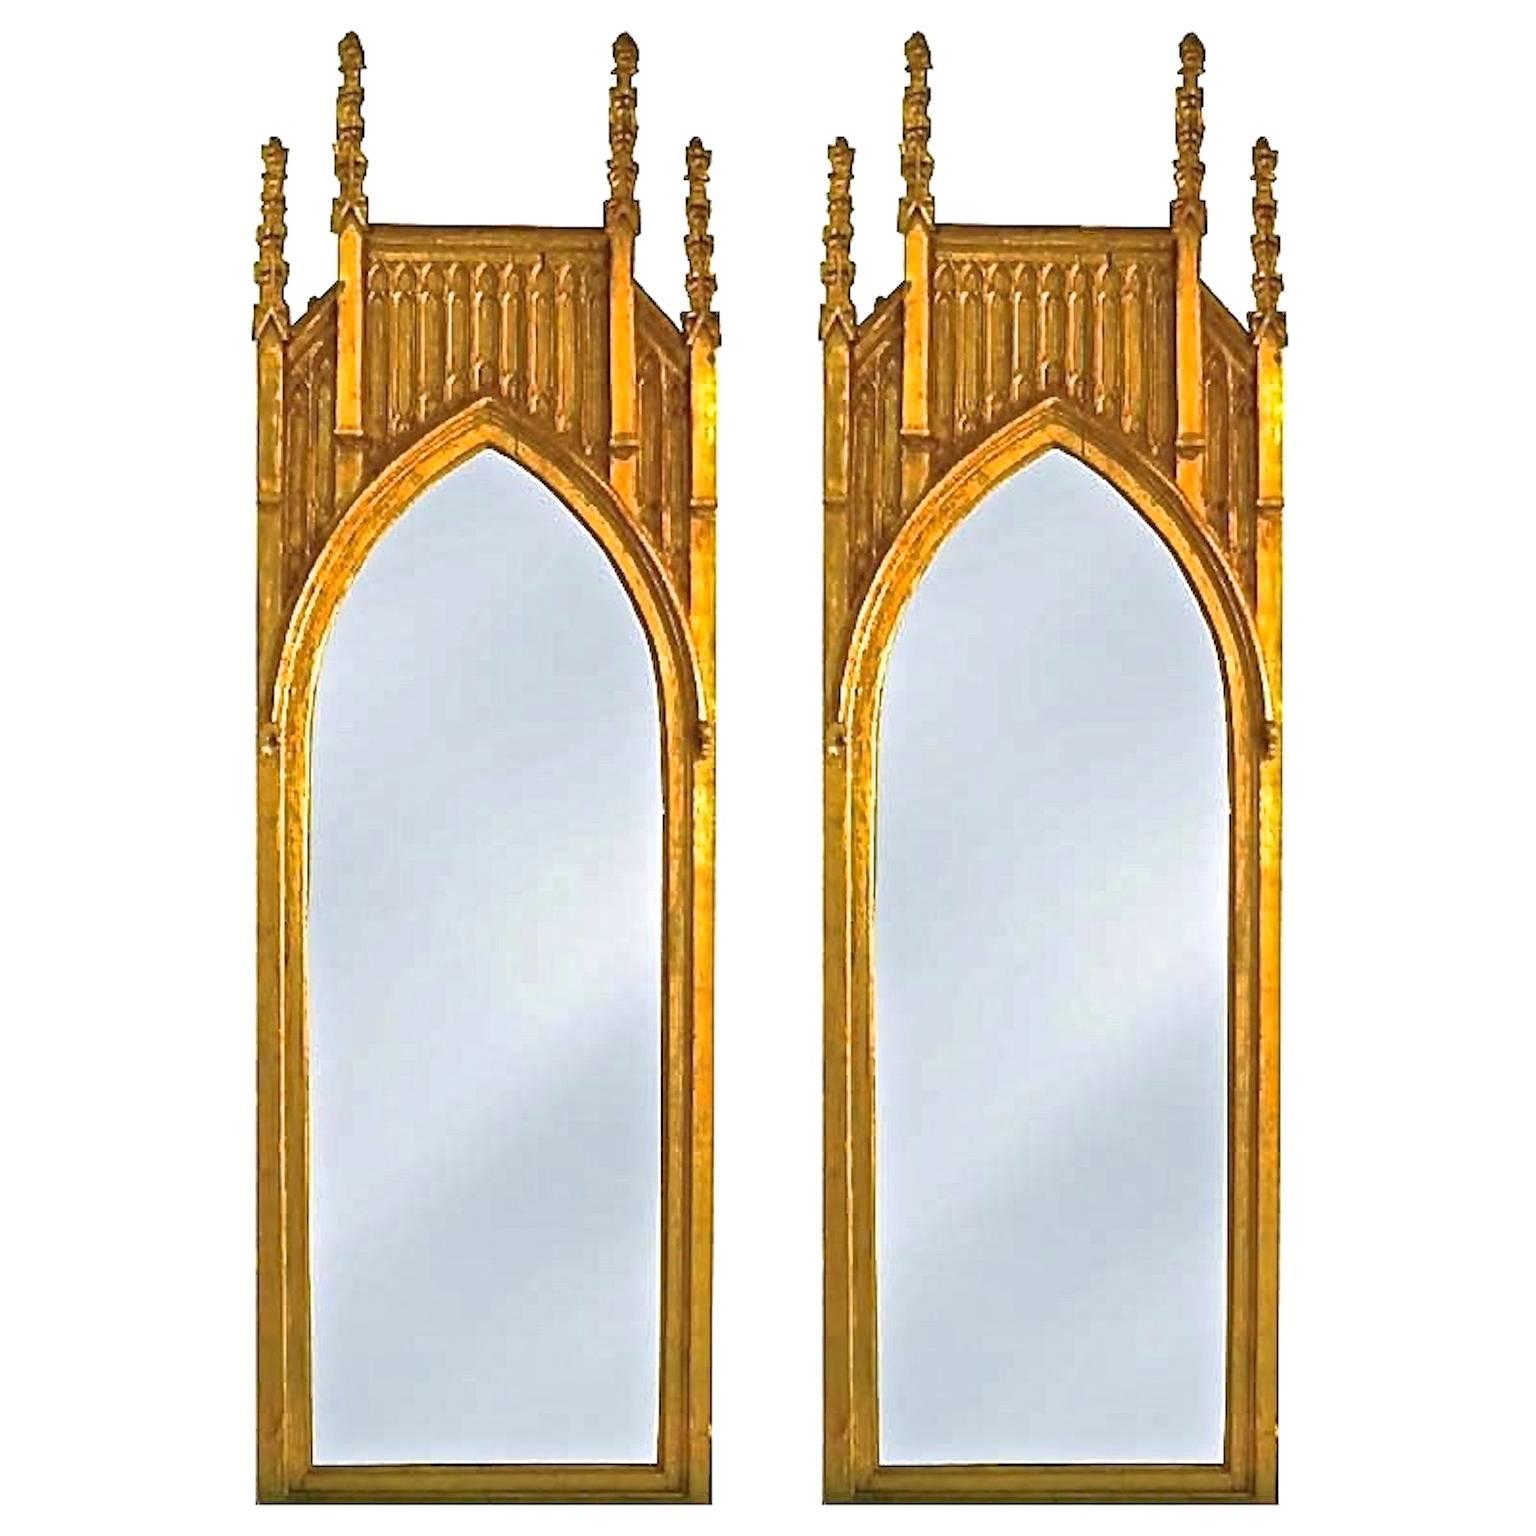 Paire de miroirs en bois doré de style architectural gothique anglais ~9 pieds de haut